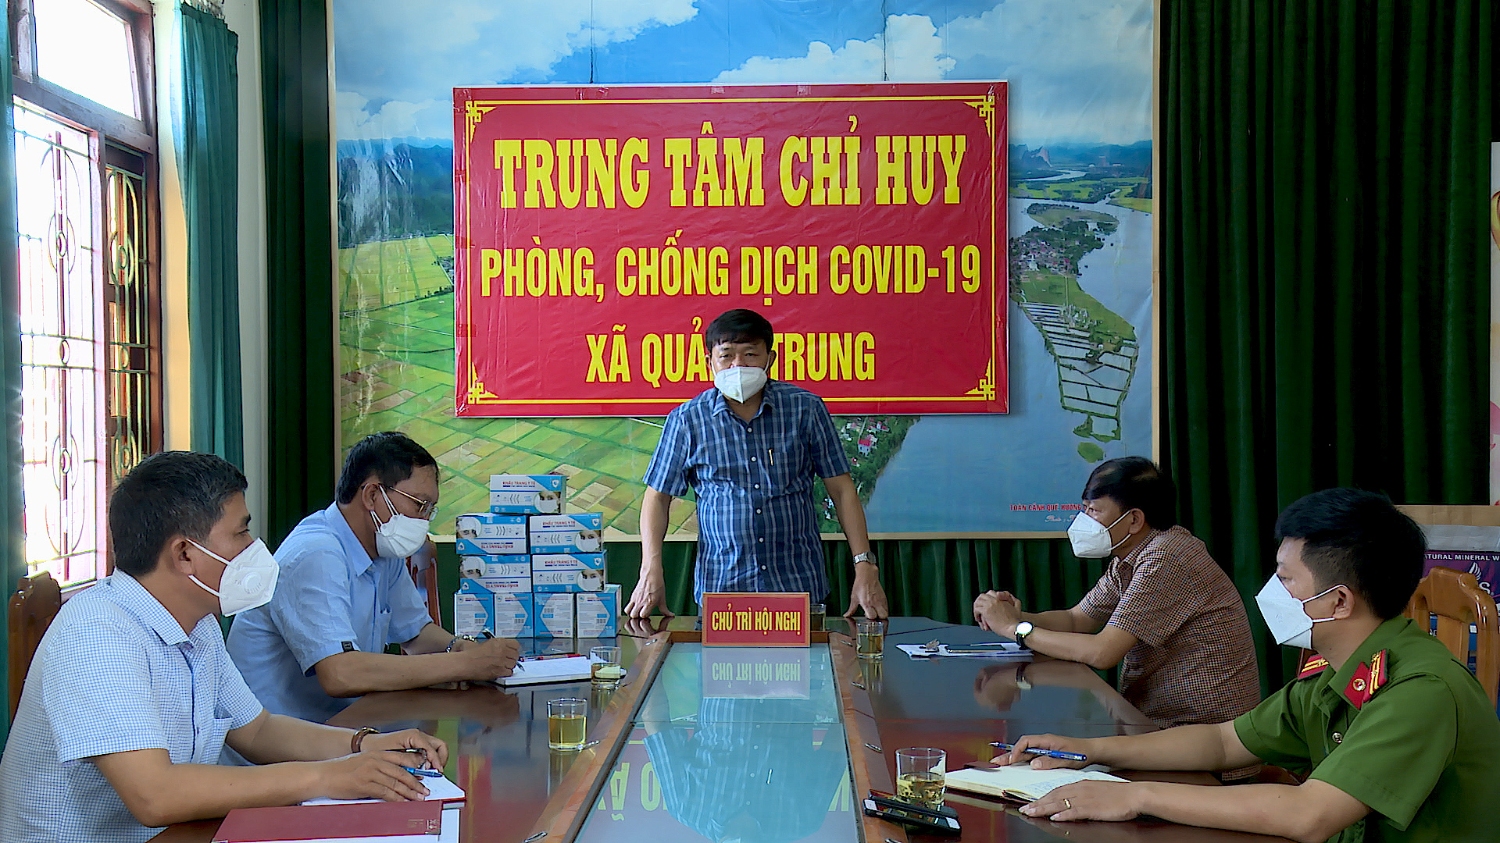 Đồng chí Đoàn Minh Thọ, Phó Bí thư Thị ủy, Chủ tịch UBND thị xã làm việc với UBND xã Quảng Trung về tình hình dịch Covid-19 trên địa bàn.